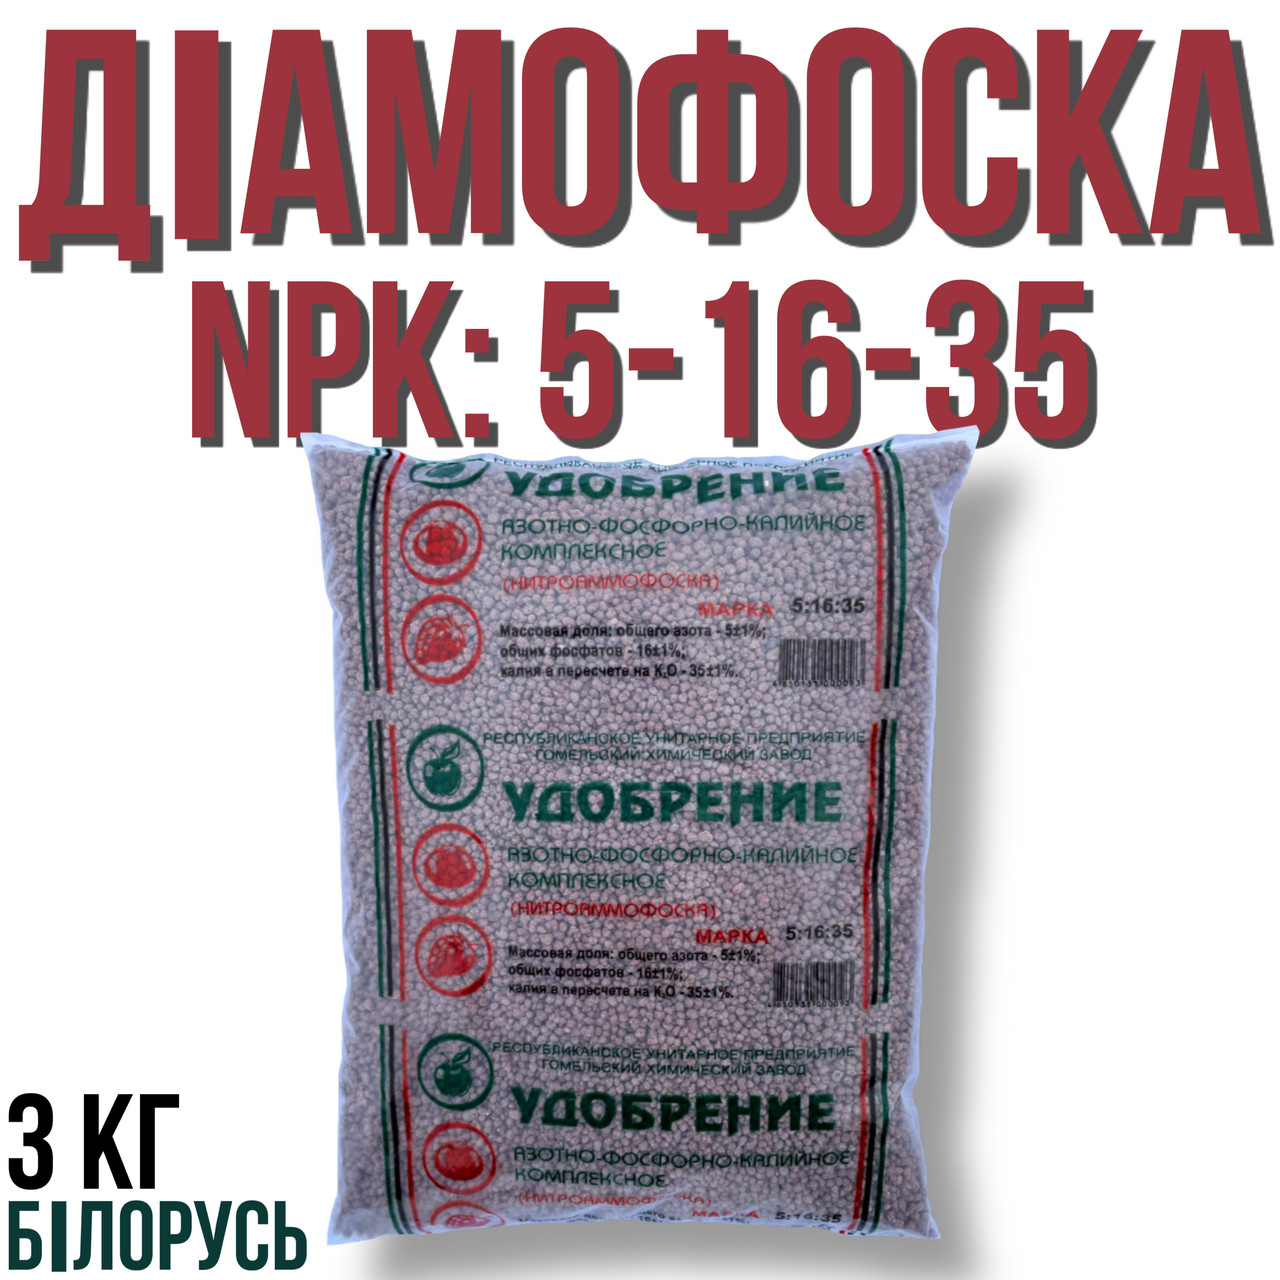 Нітроамофоска 3 кг пакет. марка: NPK 5-16-35